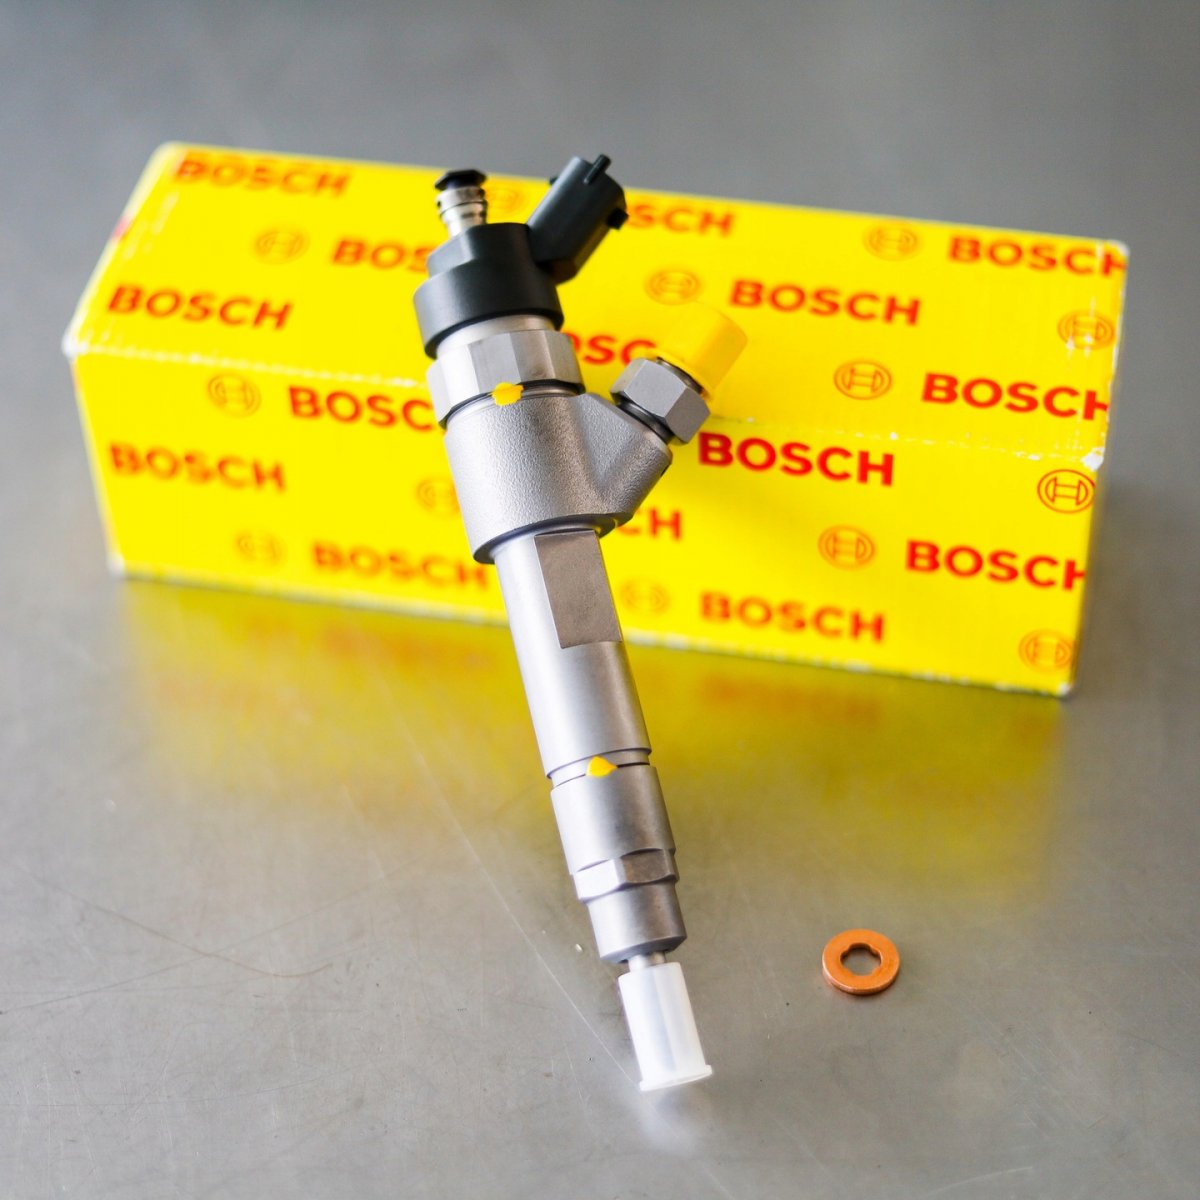 Wtryskiwacz Bosch zregenerowany przygotowany do wysyłki do zamawiającego z gwarancją 24 miesiące w dobrej cenie